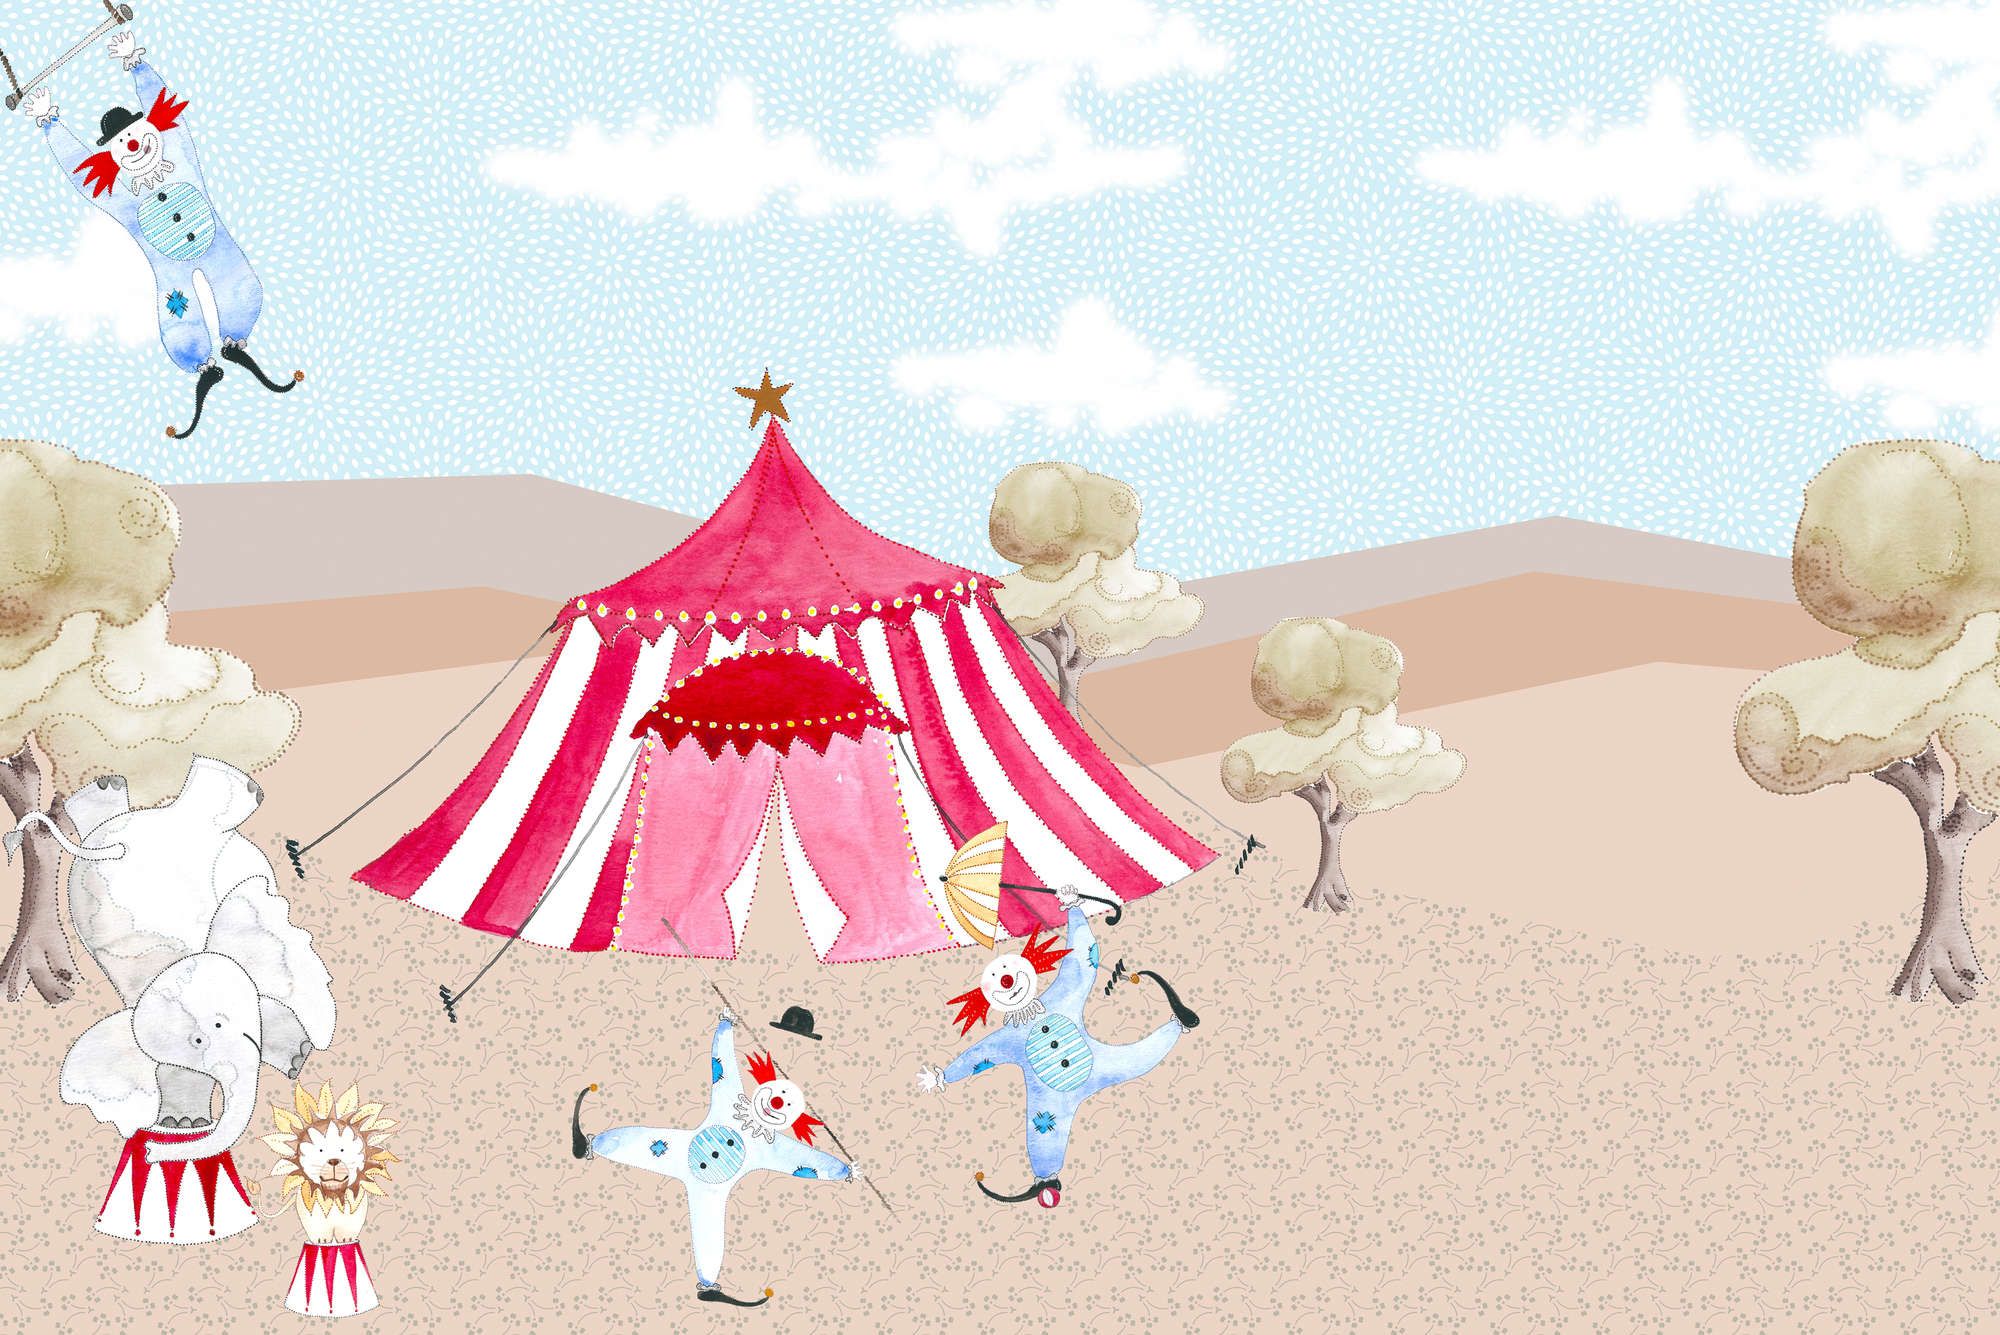             Carta da parati per bambini che disegna la tenda del circo con gli artisti su vello strutturato
        